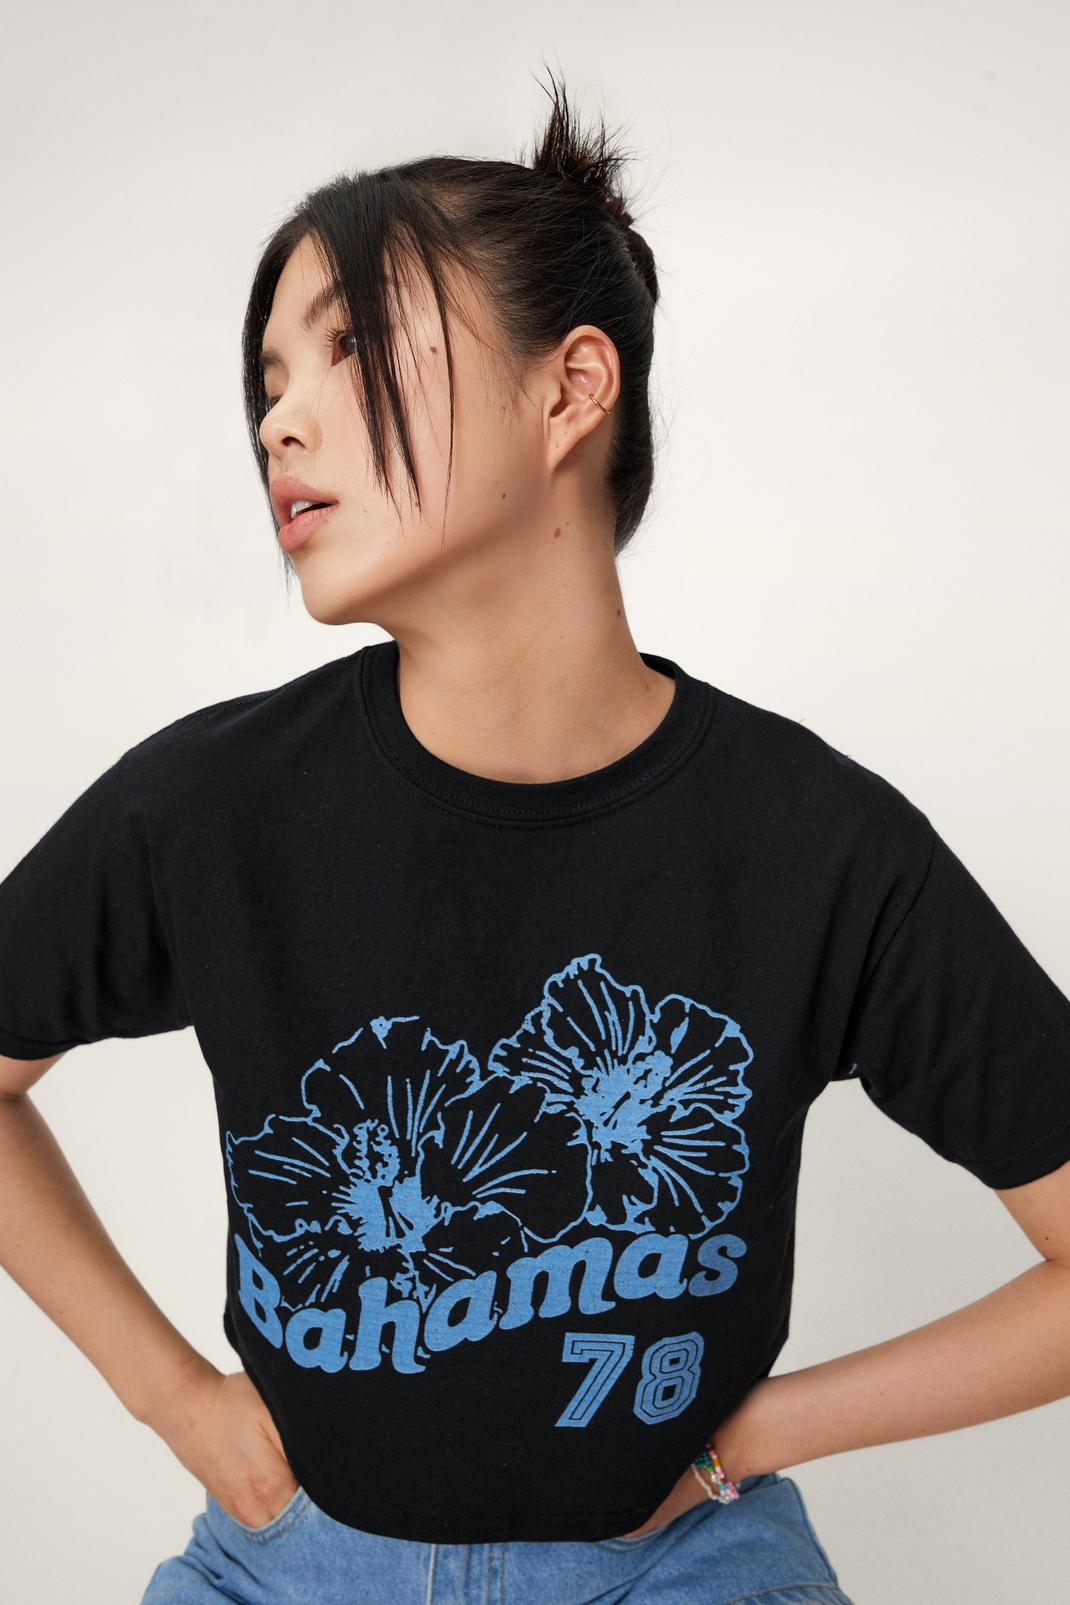 T-shirt crop top à manches courtes à impimé Bahamas 78, Black image number 1